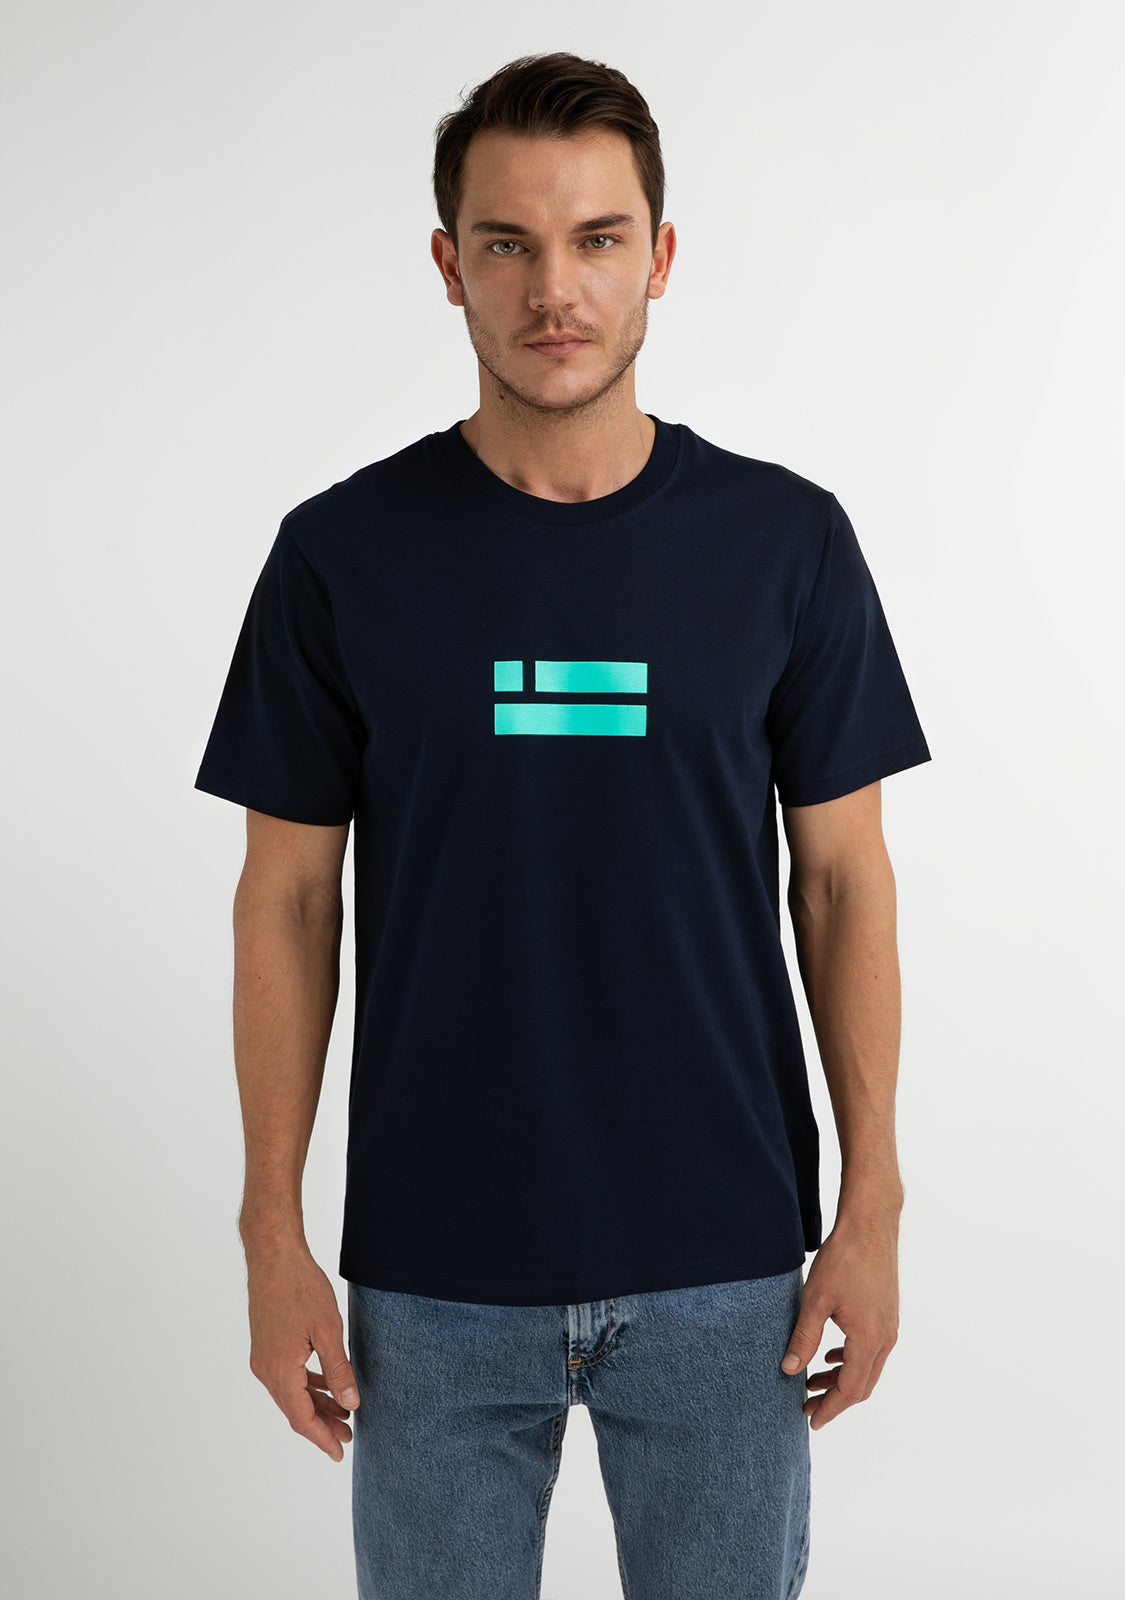 Flag T-Shirt Navy / Light Blue